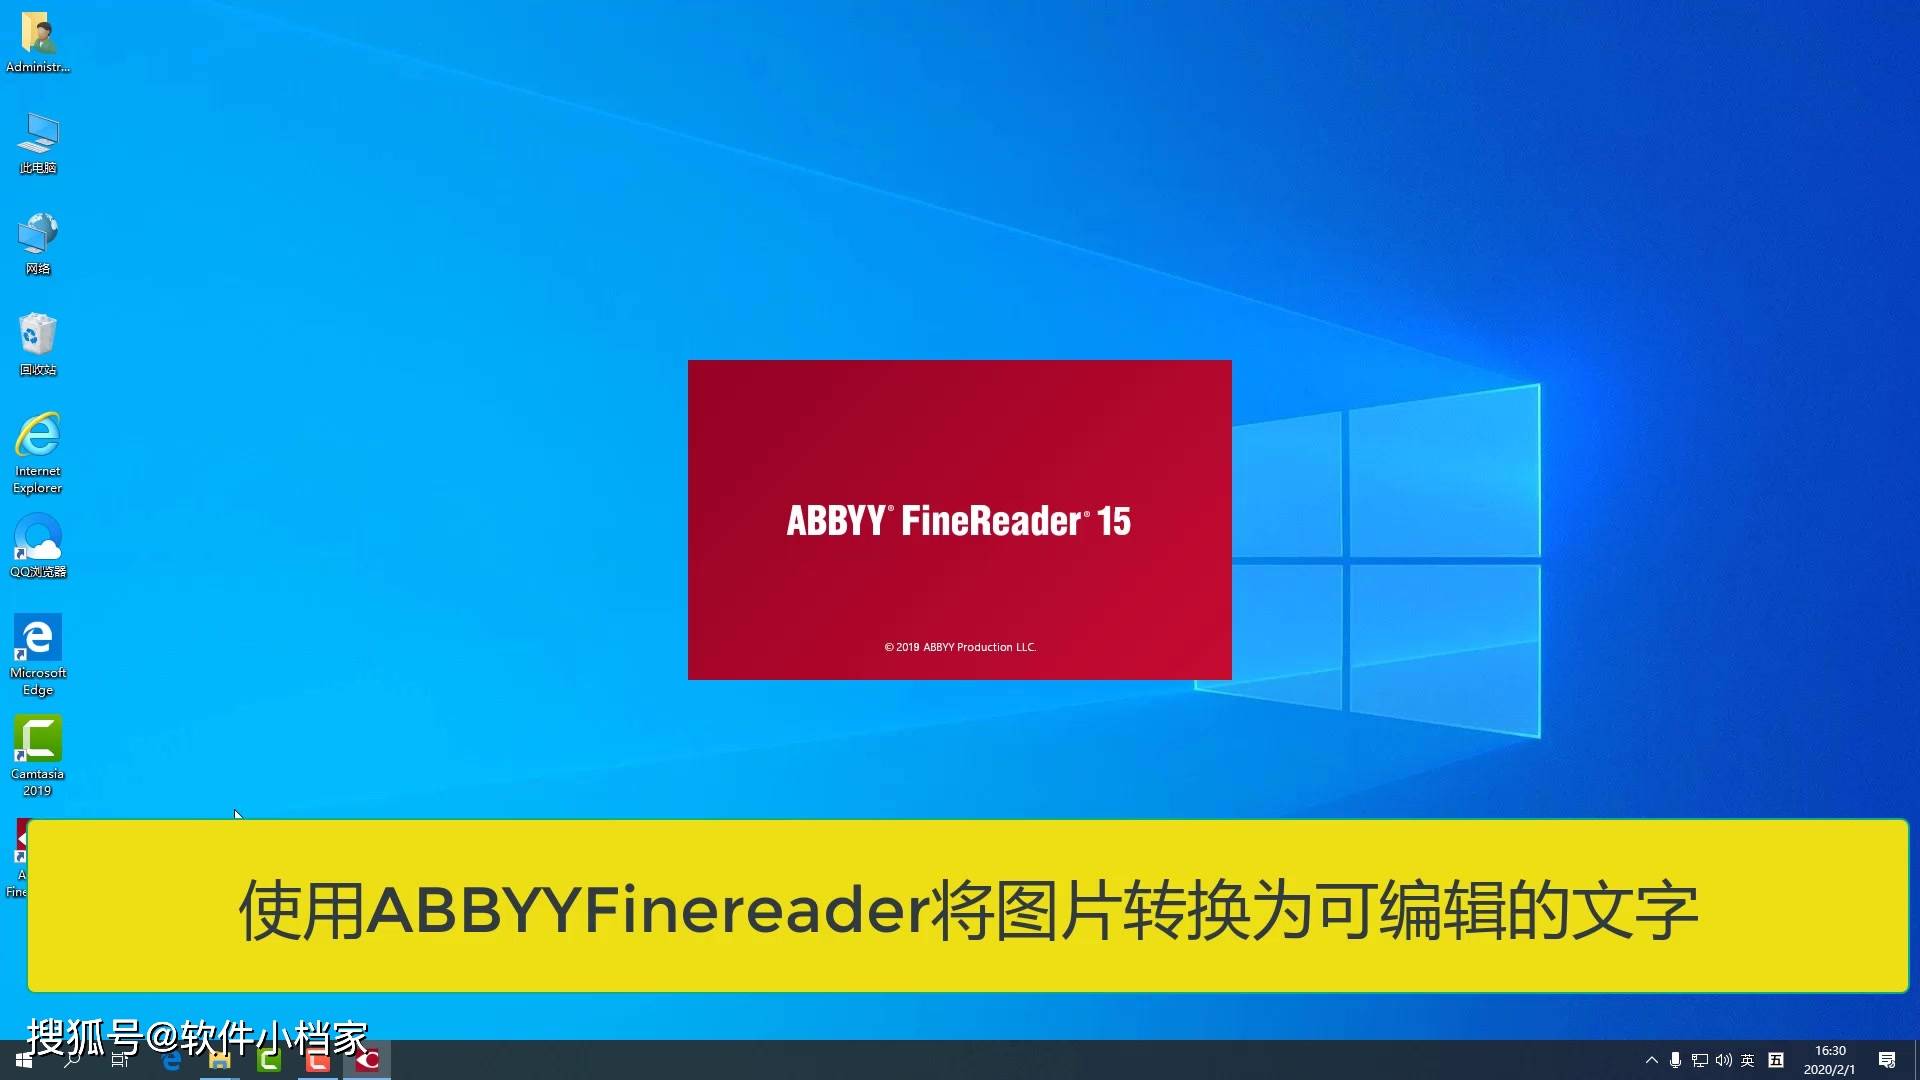 ABBYY FineReader16最新版图片文字识别工具功能介绍